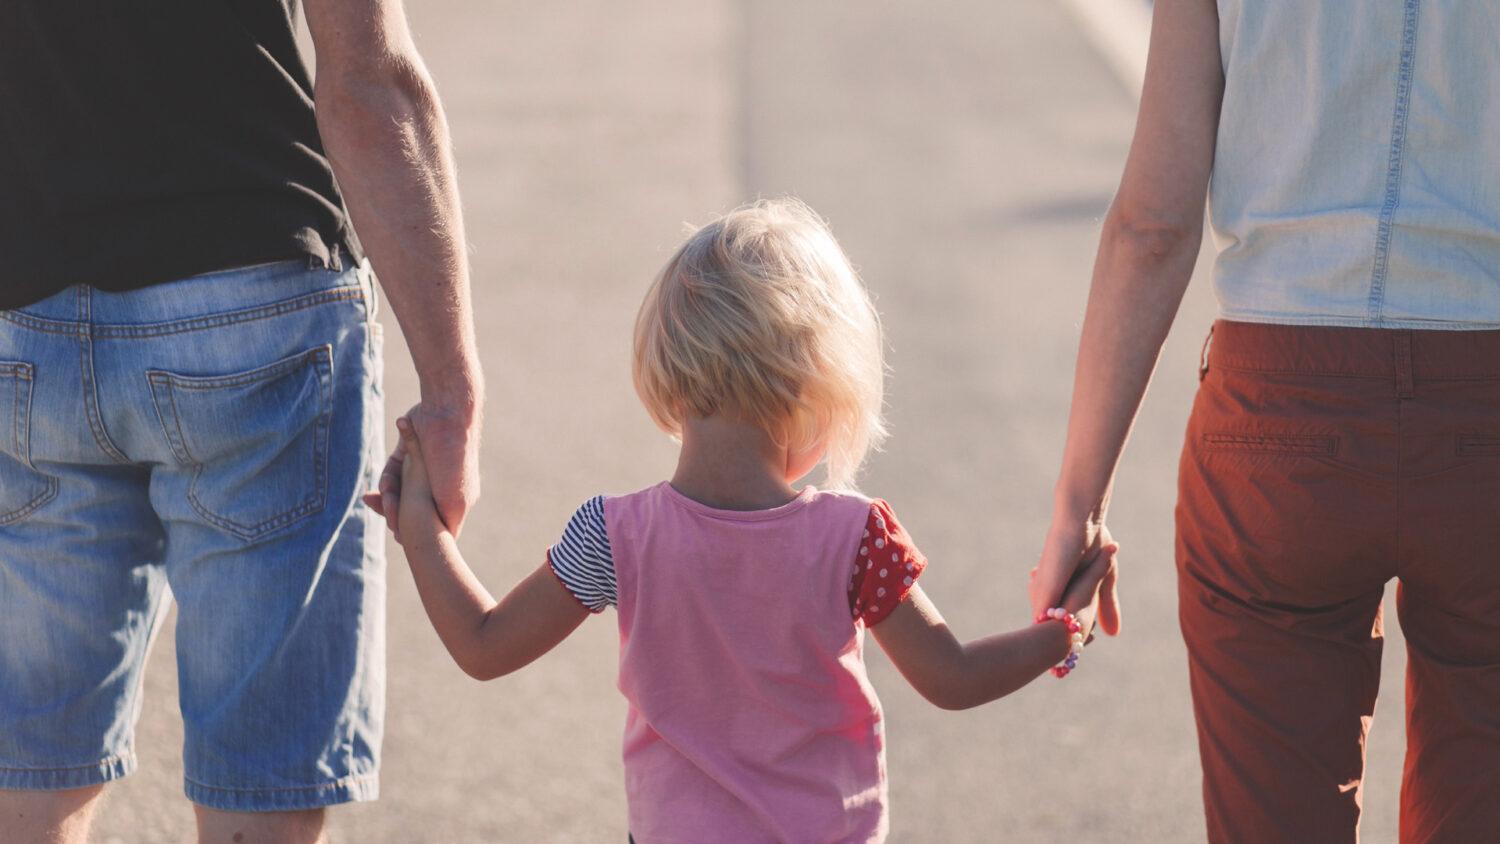 Päť viet, ktorými svojim deťom vyznávam lásku